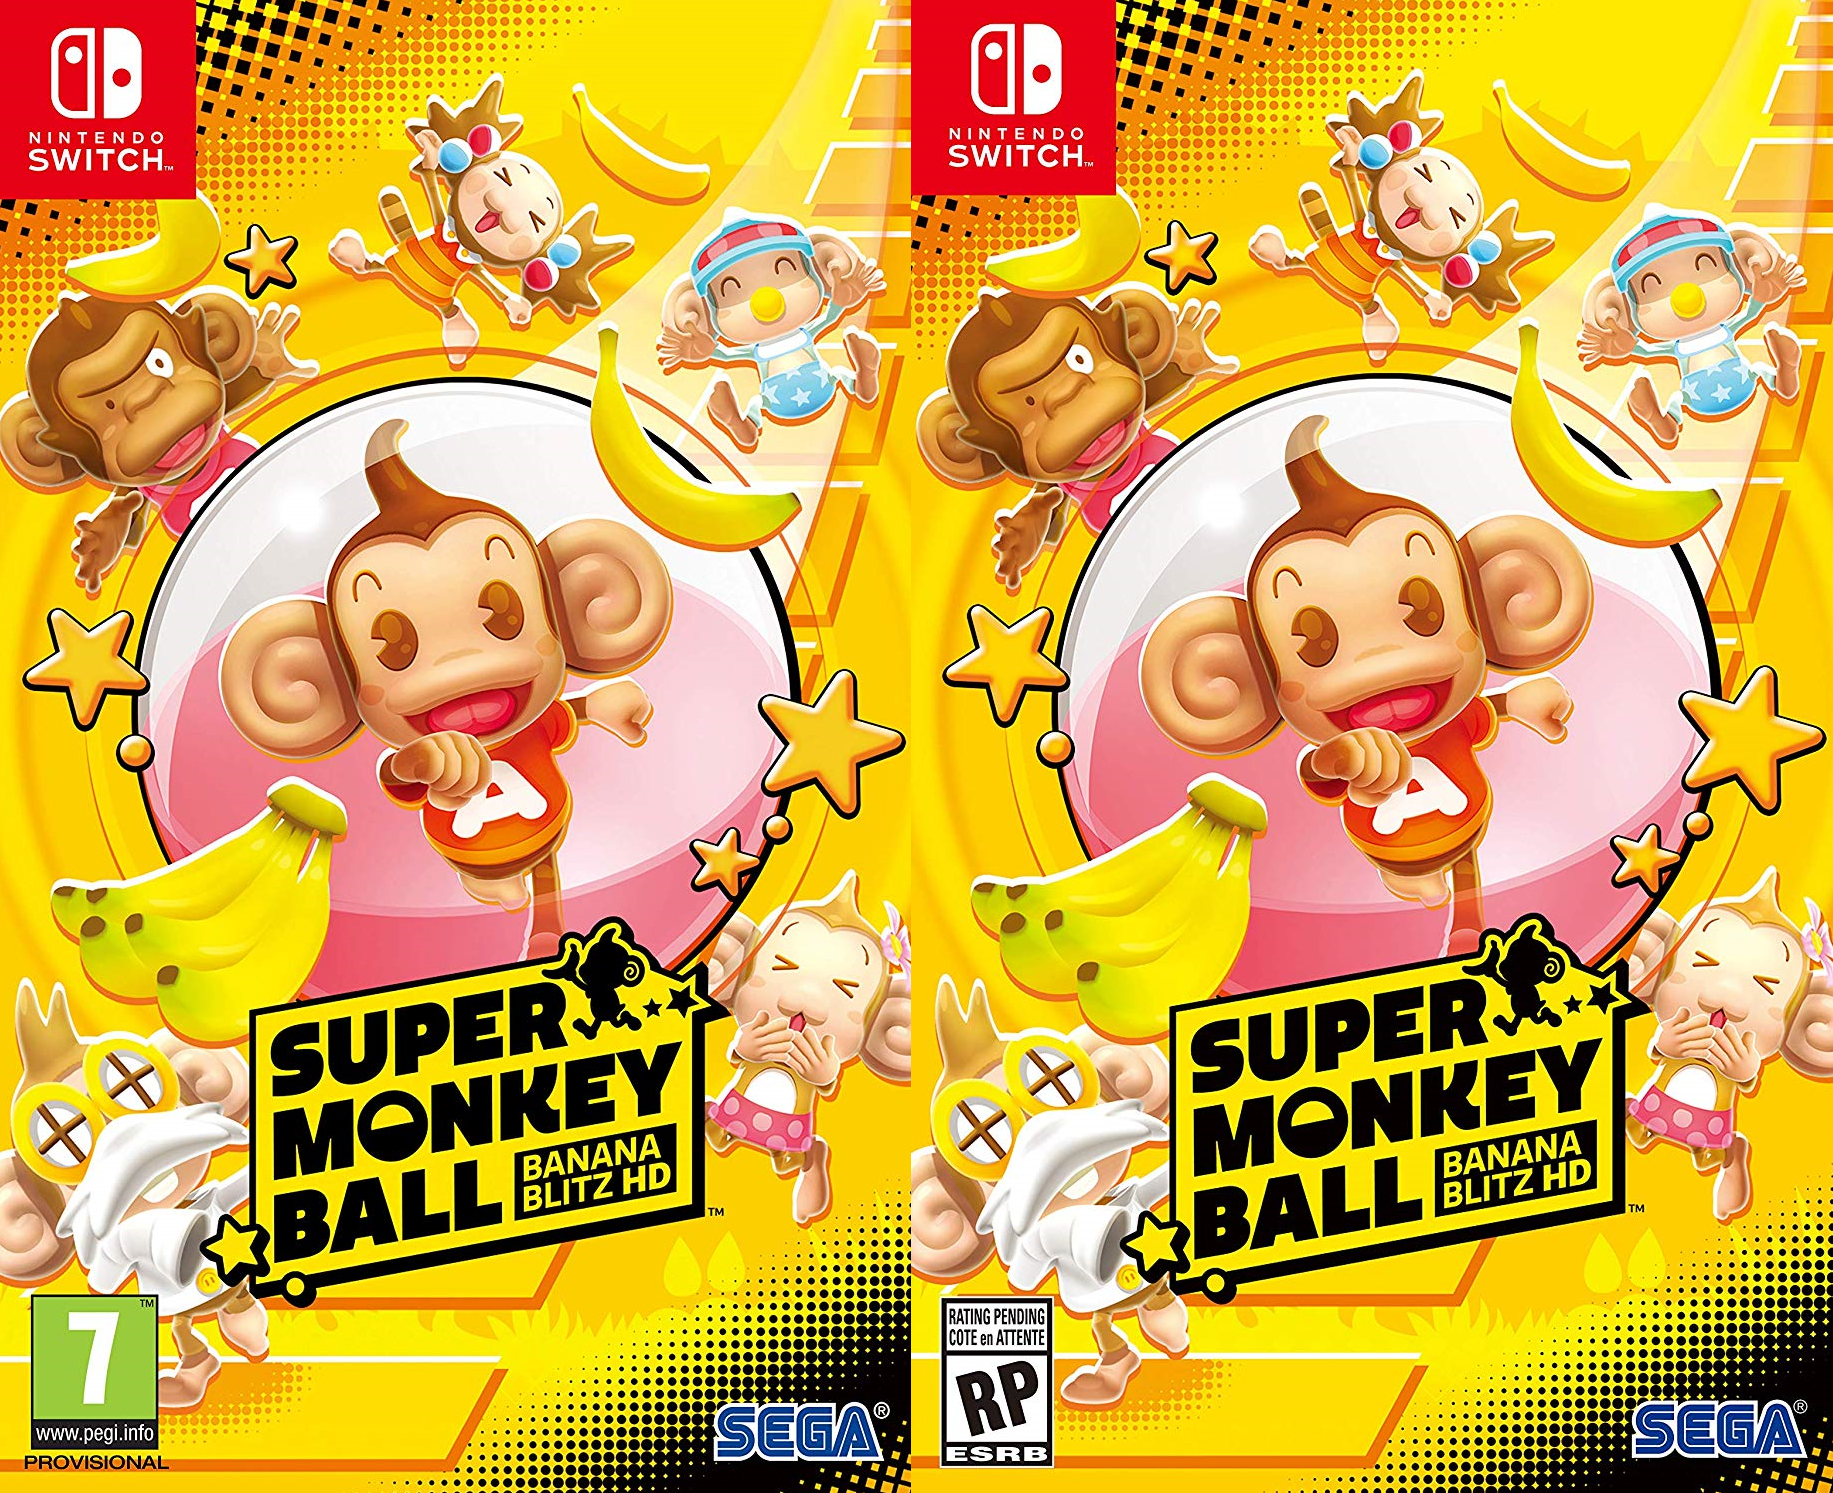 Super monkey ball banana. Super Monkey Ball: Banana Blitz обложка. Super macloid Ball Banana Blitz. Super Monkey Ball Banana Blitz Mini.